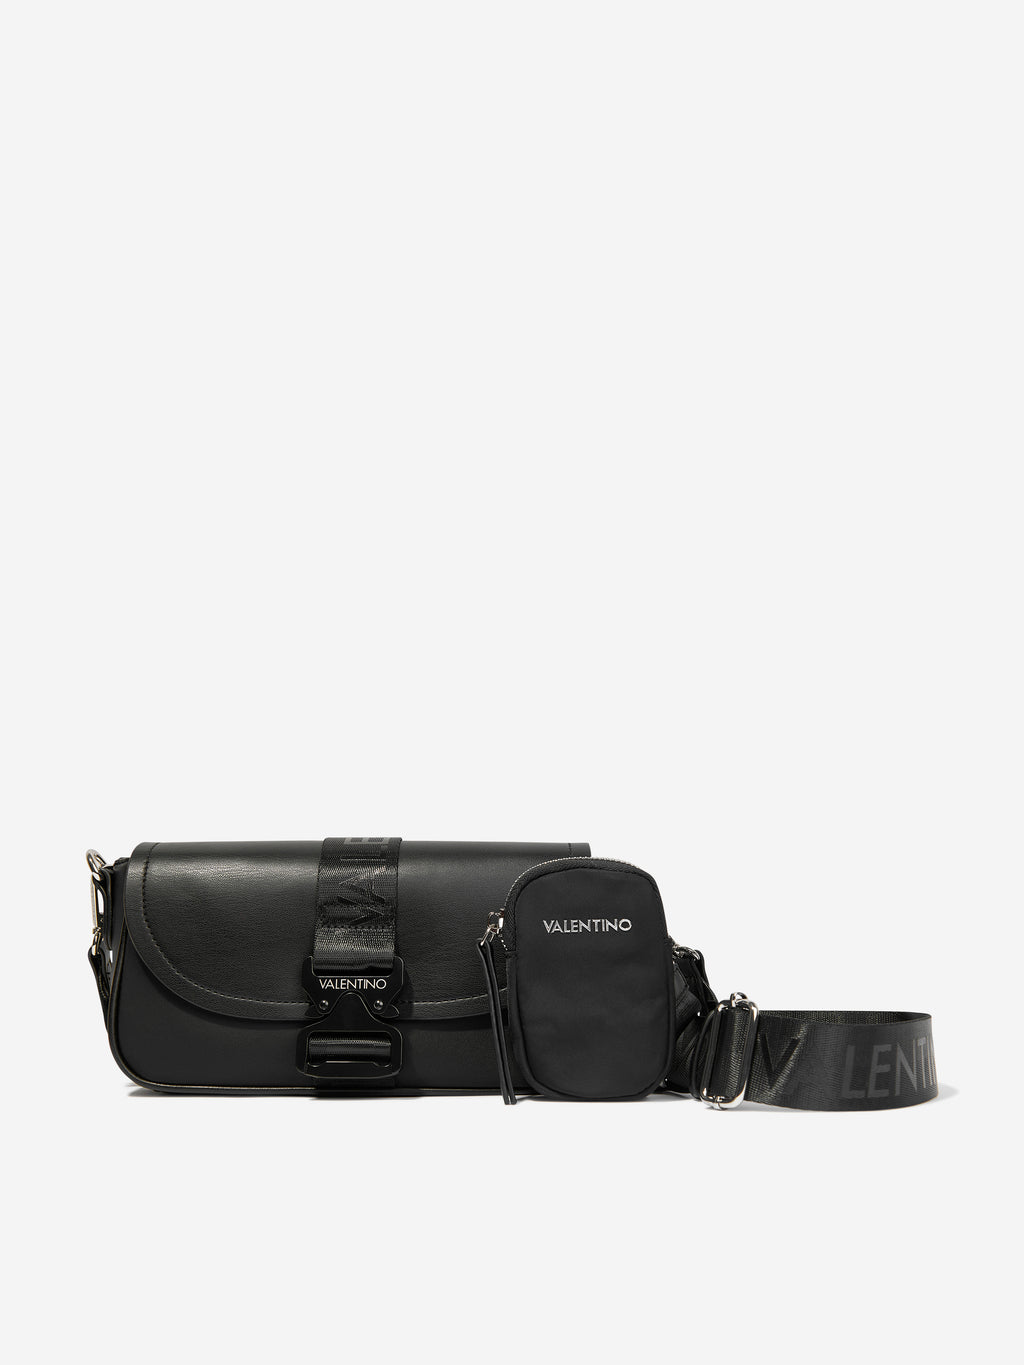 Prada Pocket nylon and brushed leather bag